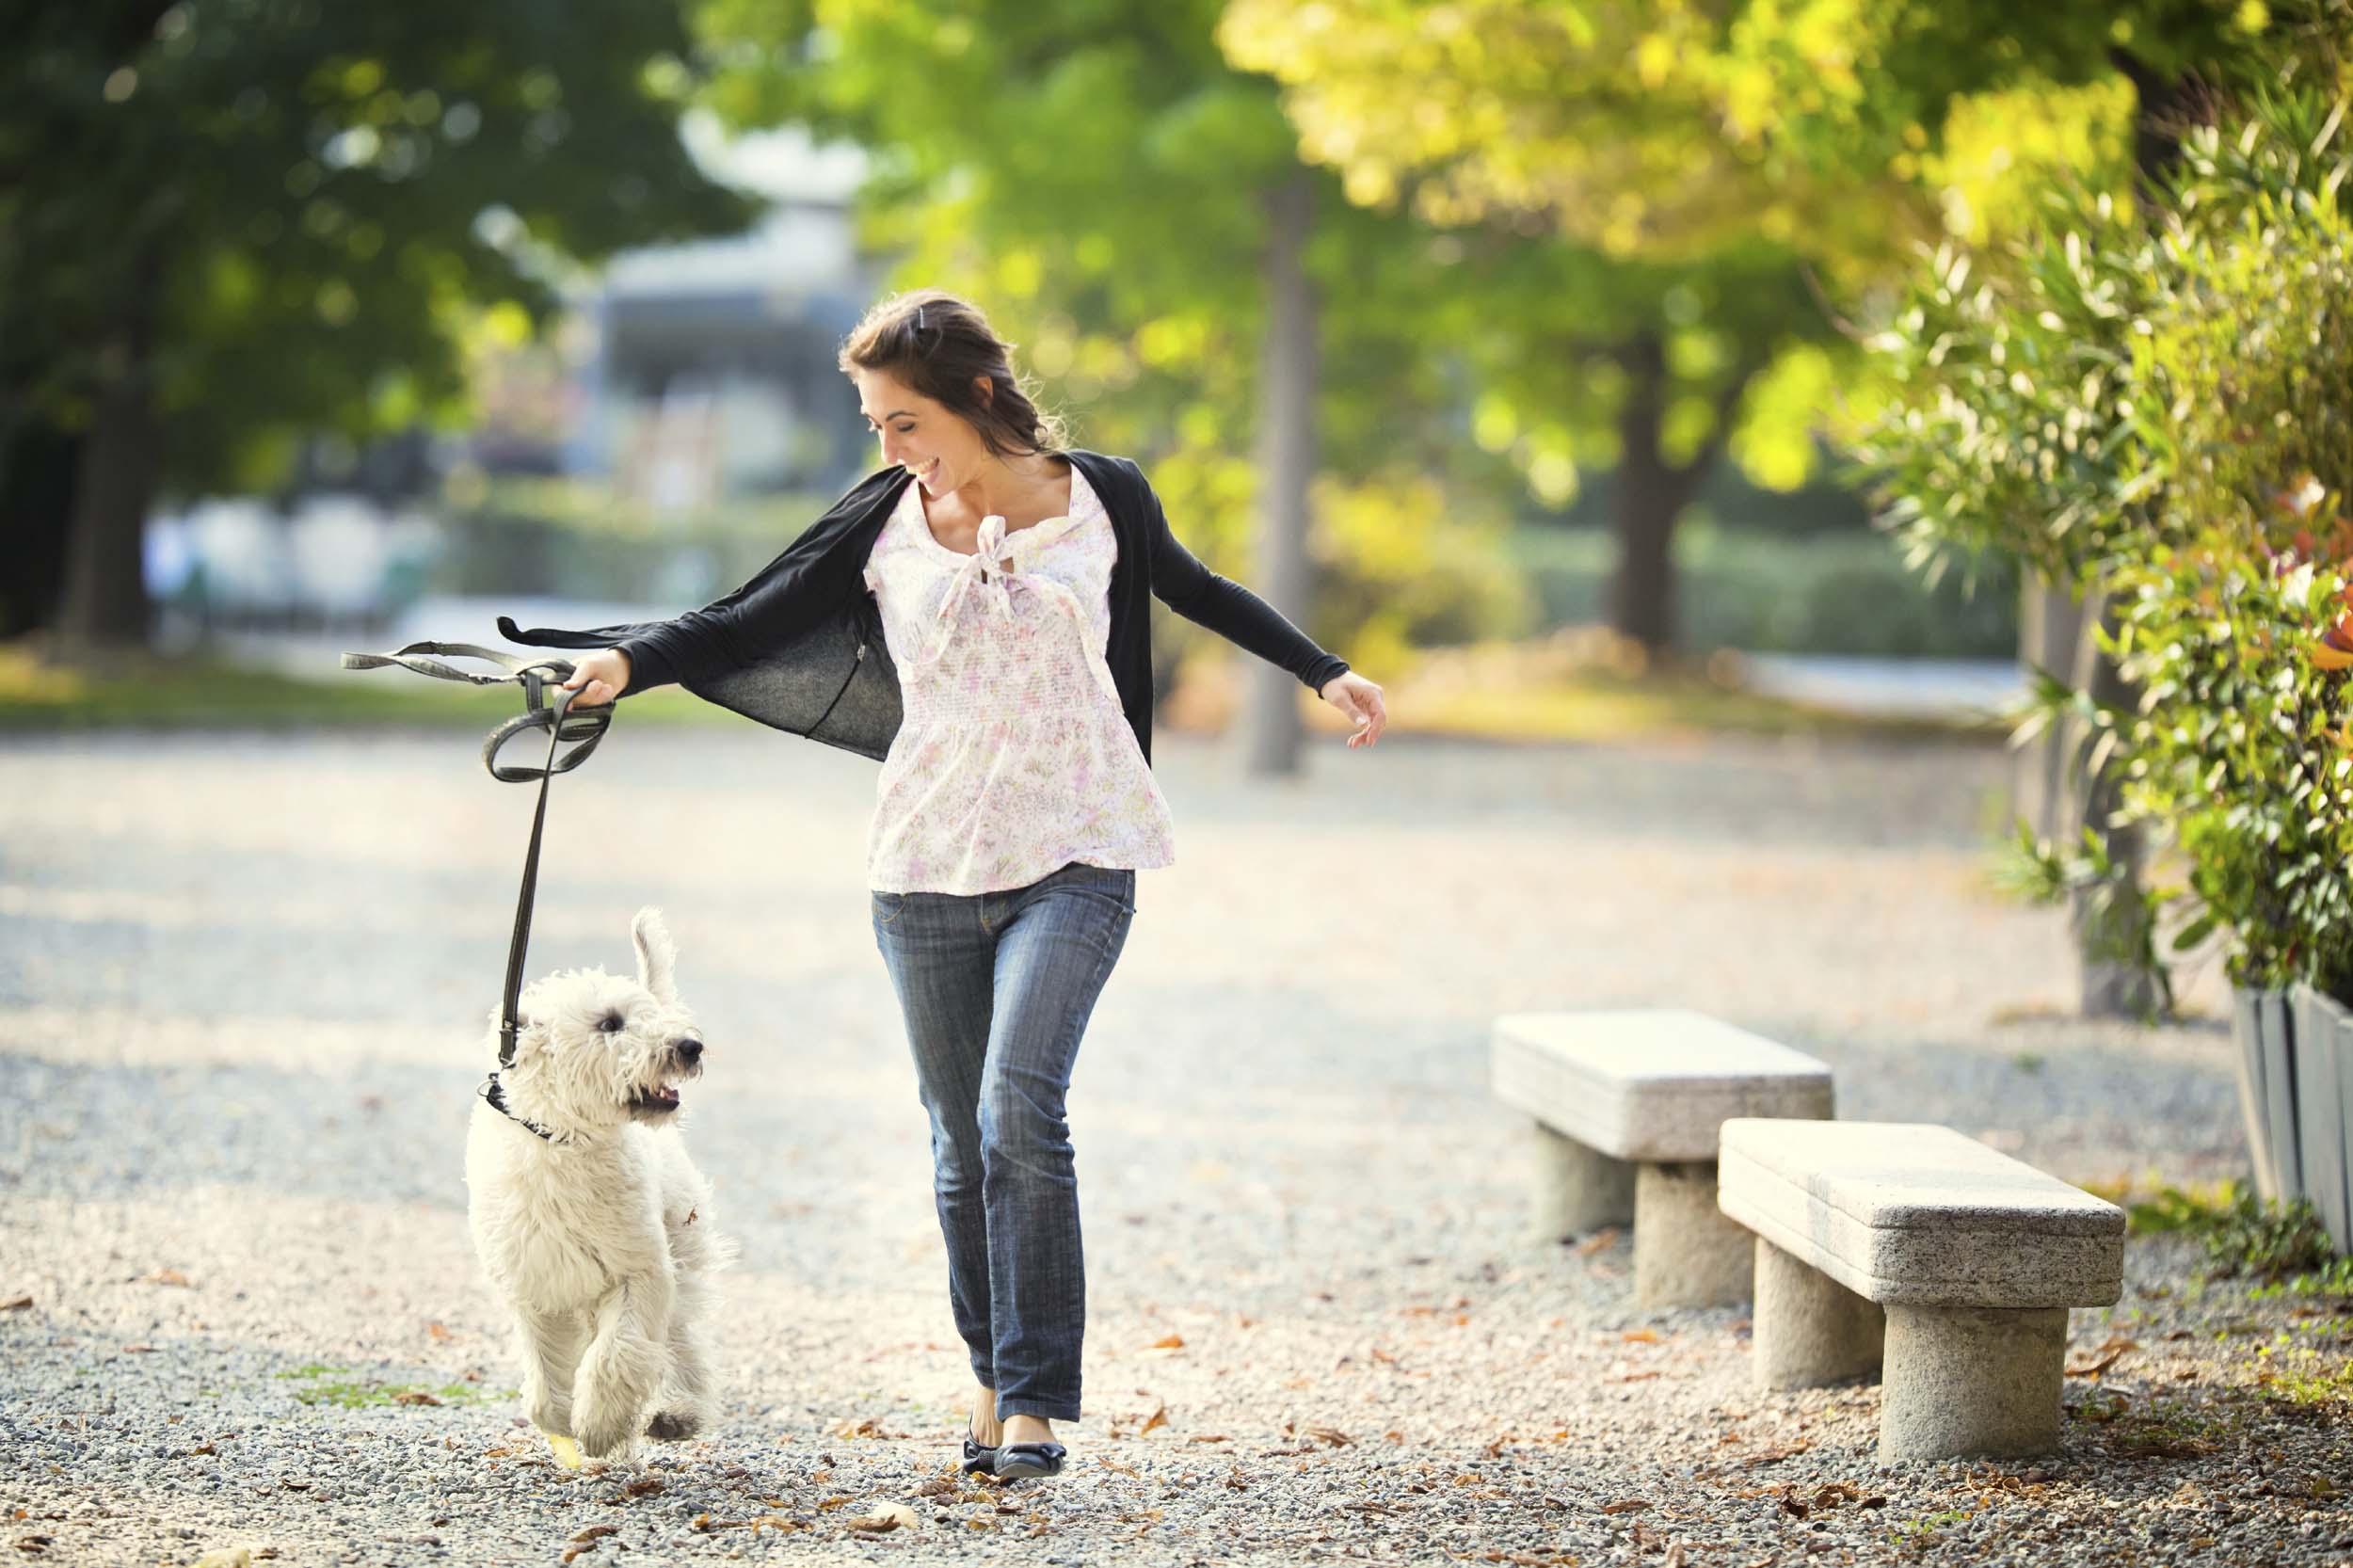 Что будет делать гулять. Прогулка с собакой. Гулять с собакой. Девушка гуляет с собакой. Фотосессия прогулка с собакой.